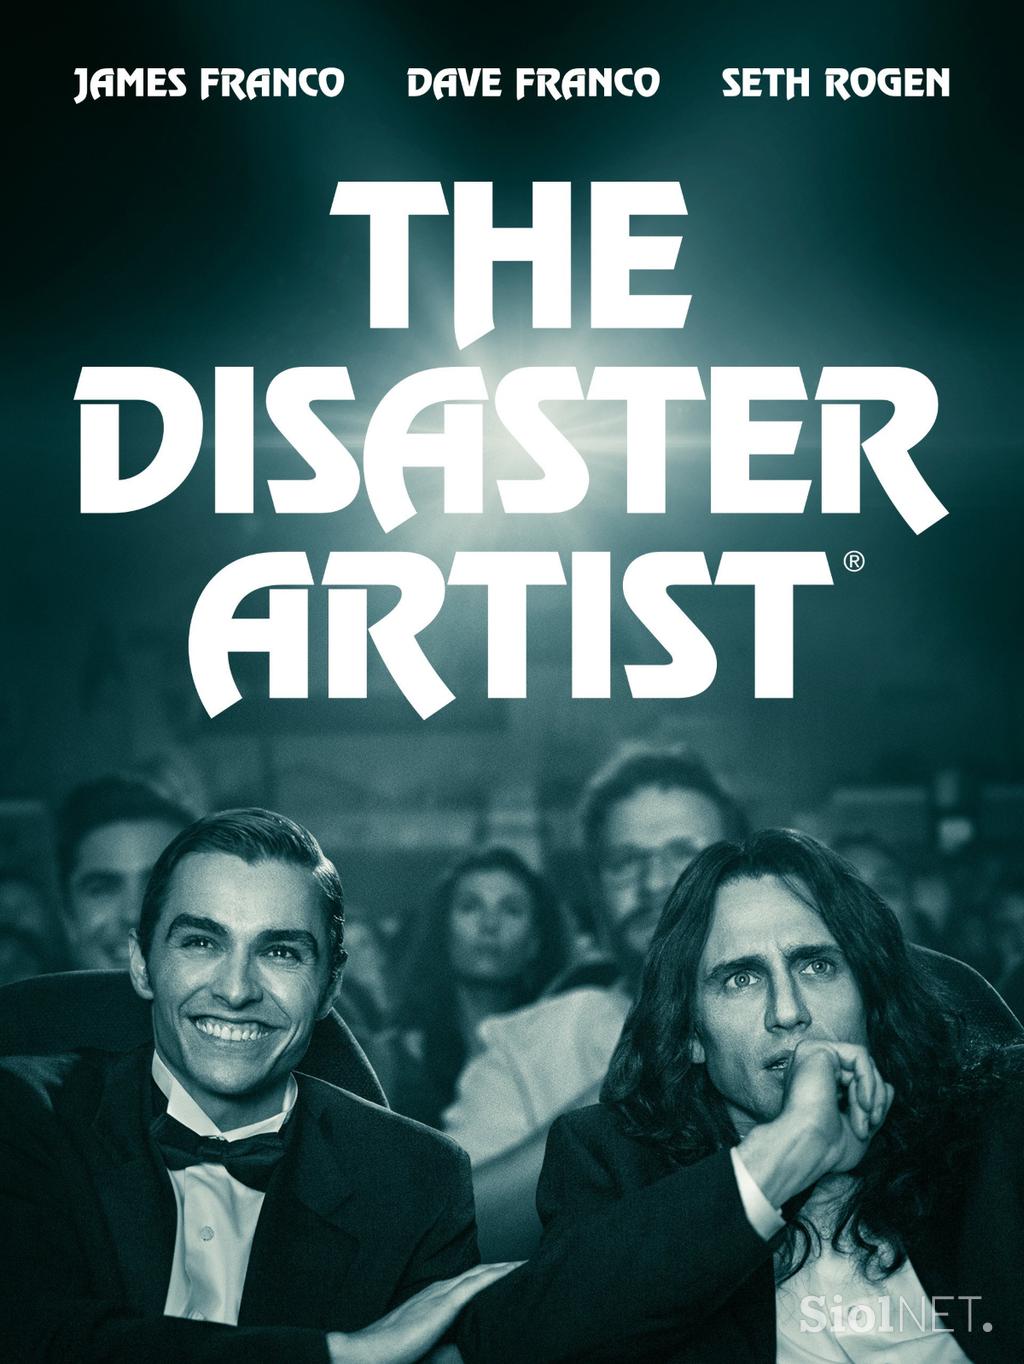 Mojster za katastrofo (The Disaster Artist)